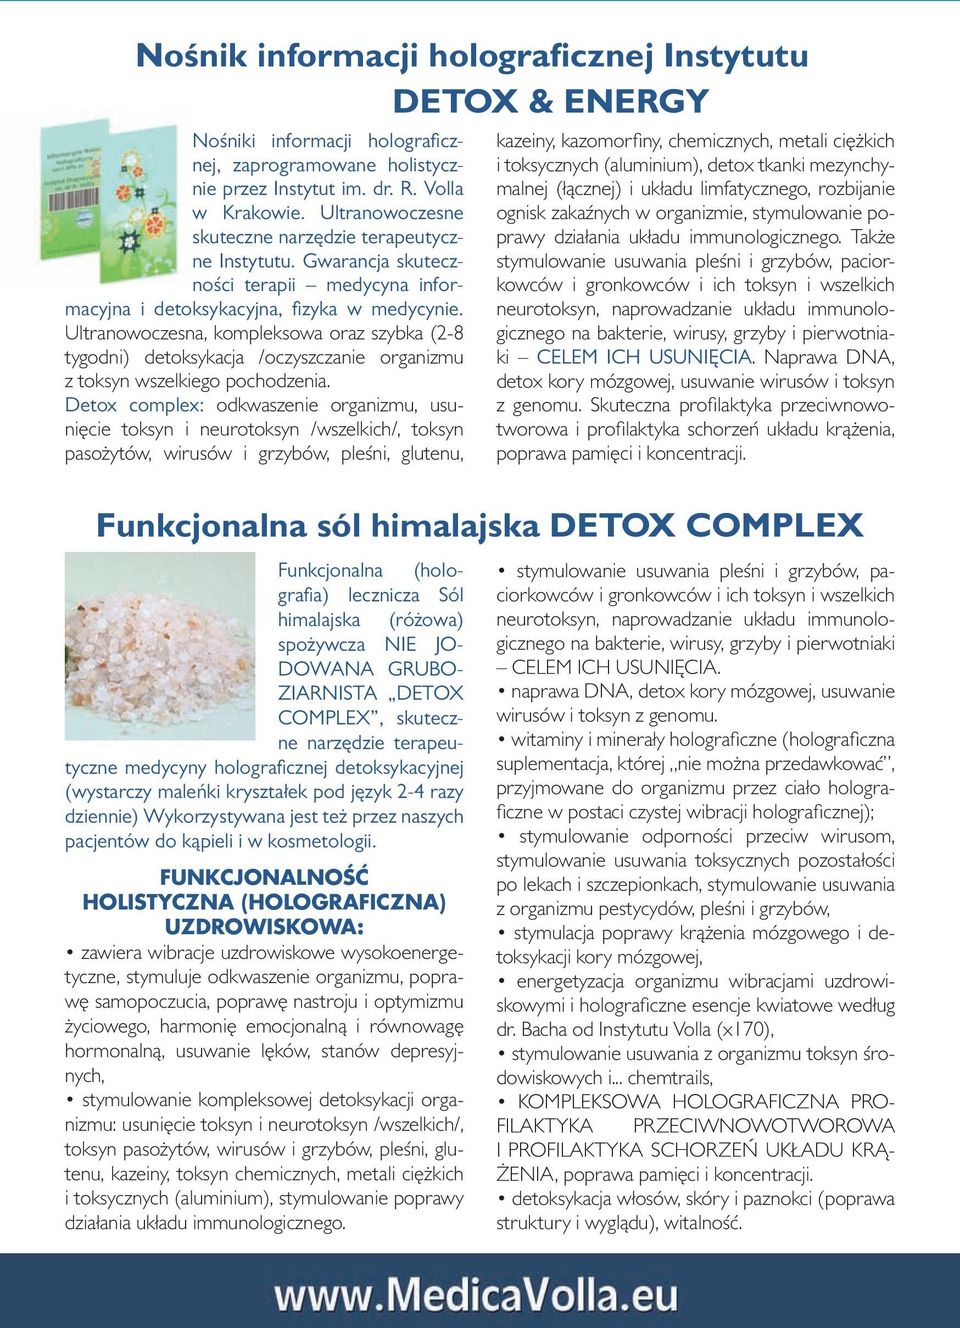 Ultranowoczesna, kompleksowa oraz szybka (2-8 tygodni) detoksykacja /oczyszczanie organizmu z toksyn wszelkiego pochodzenia.